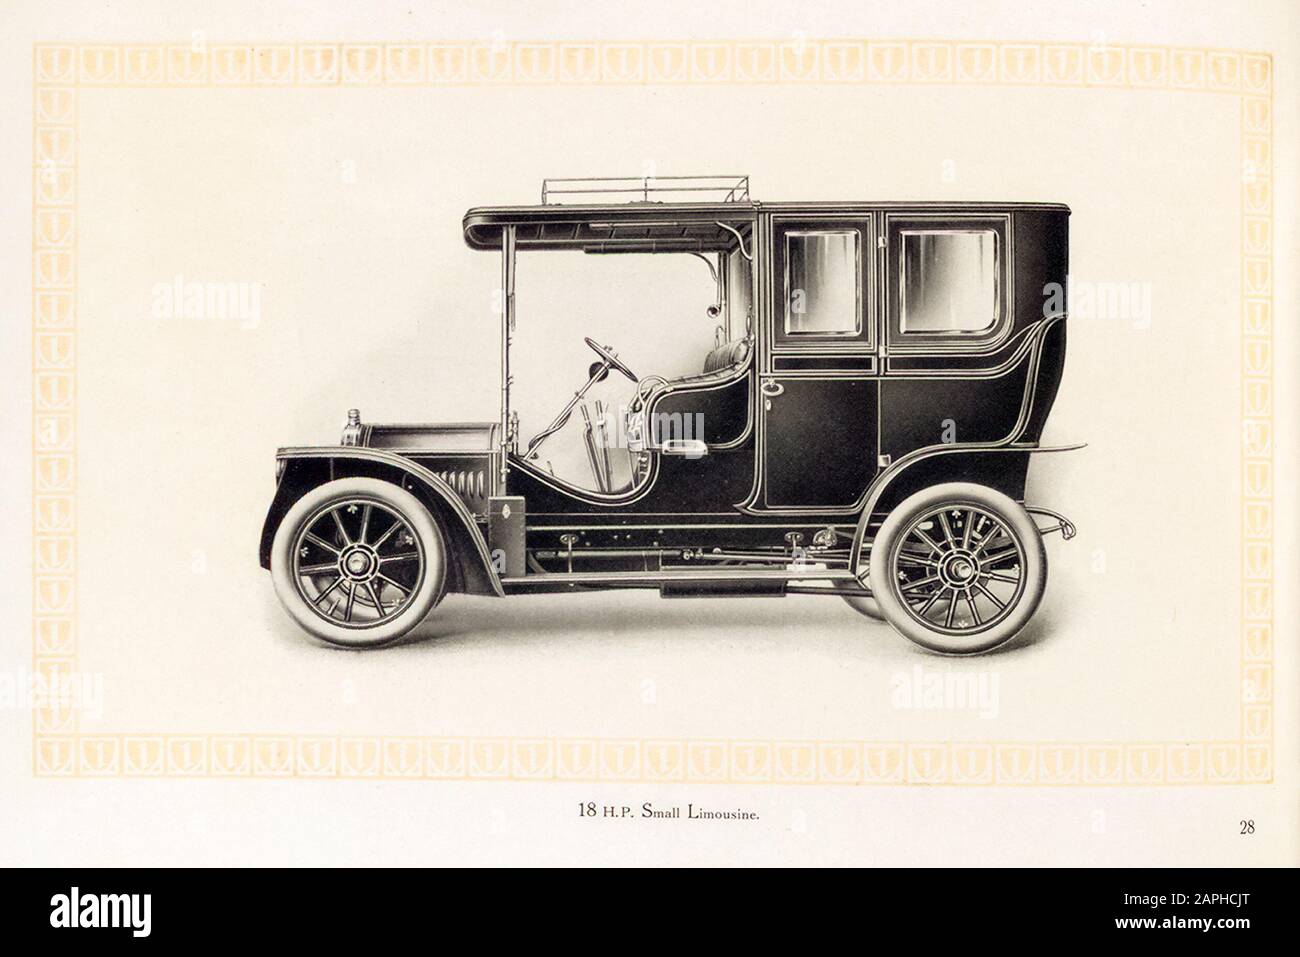 Auto a motore Benz, piccola limousine da 18 hp Vintage dal catalogo commerciale Benz & Co, illustrazione 1909 Foto Stock